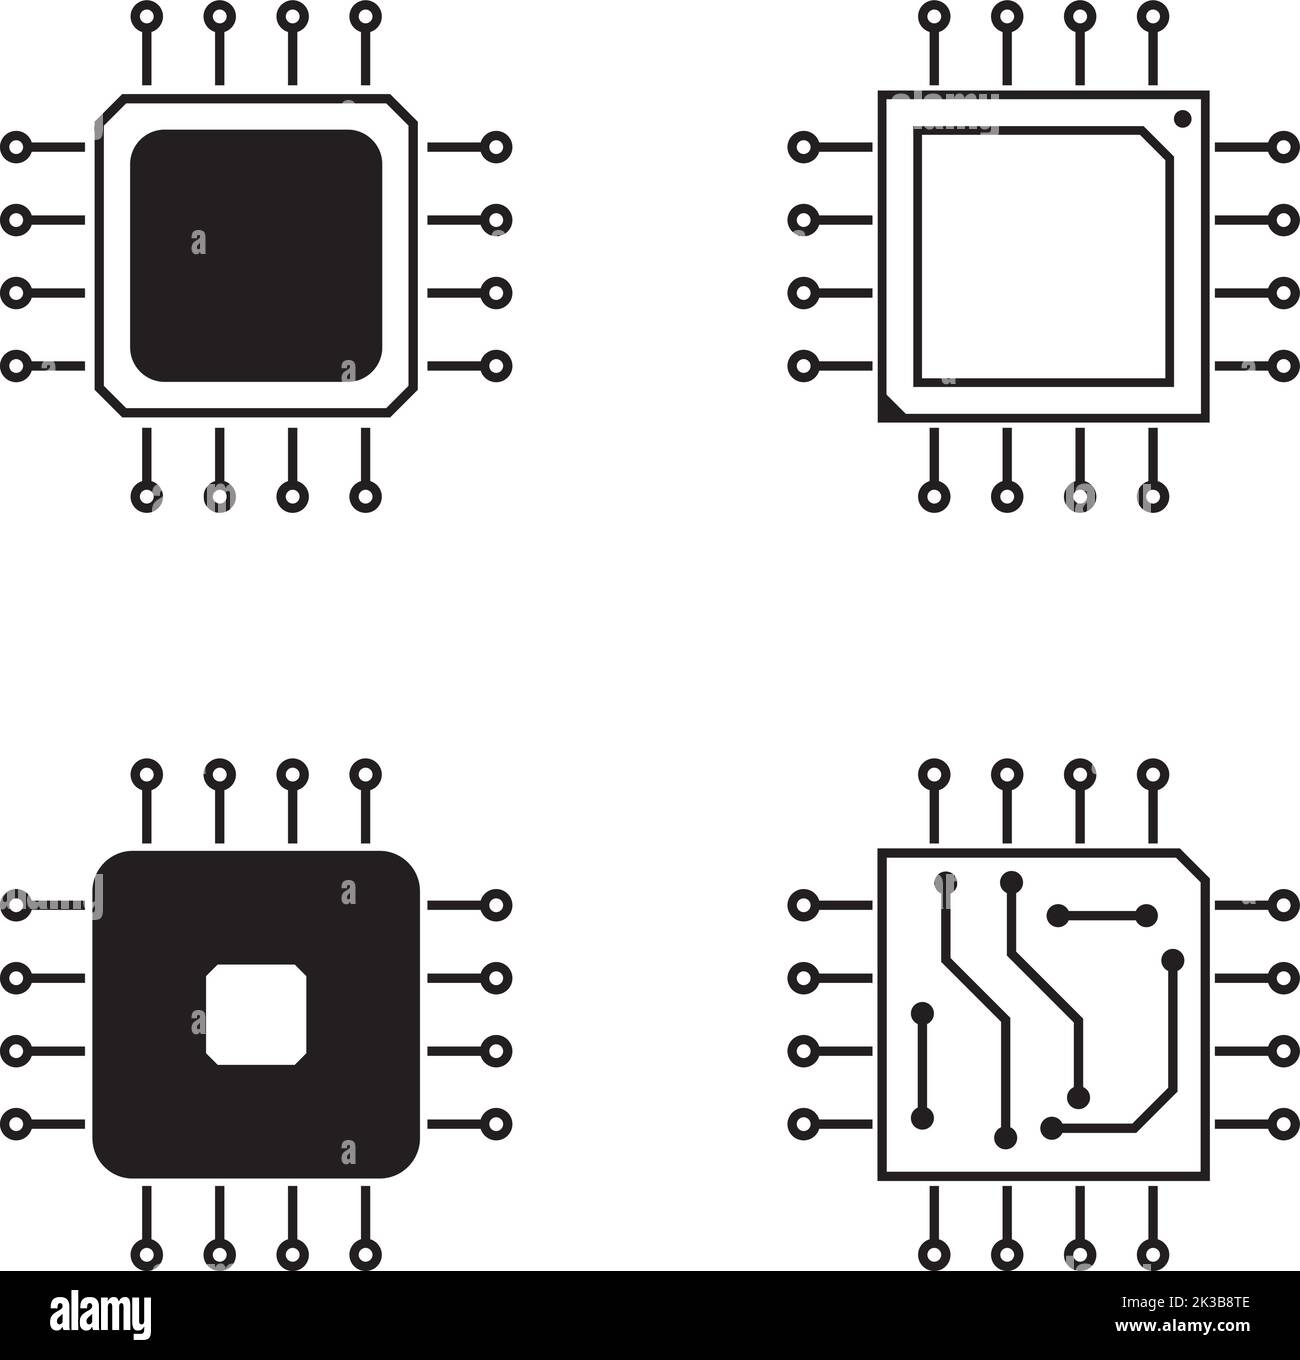 Computer Mikroprozessor IC Chip minimalistisches flaches Design Icon Pack, elektronischer Mikrochip, Halbleitertechnologie Stock Vektor